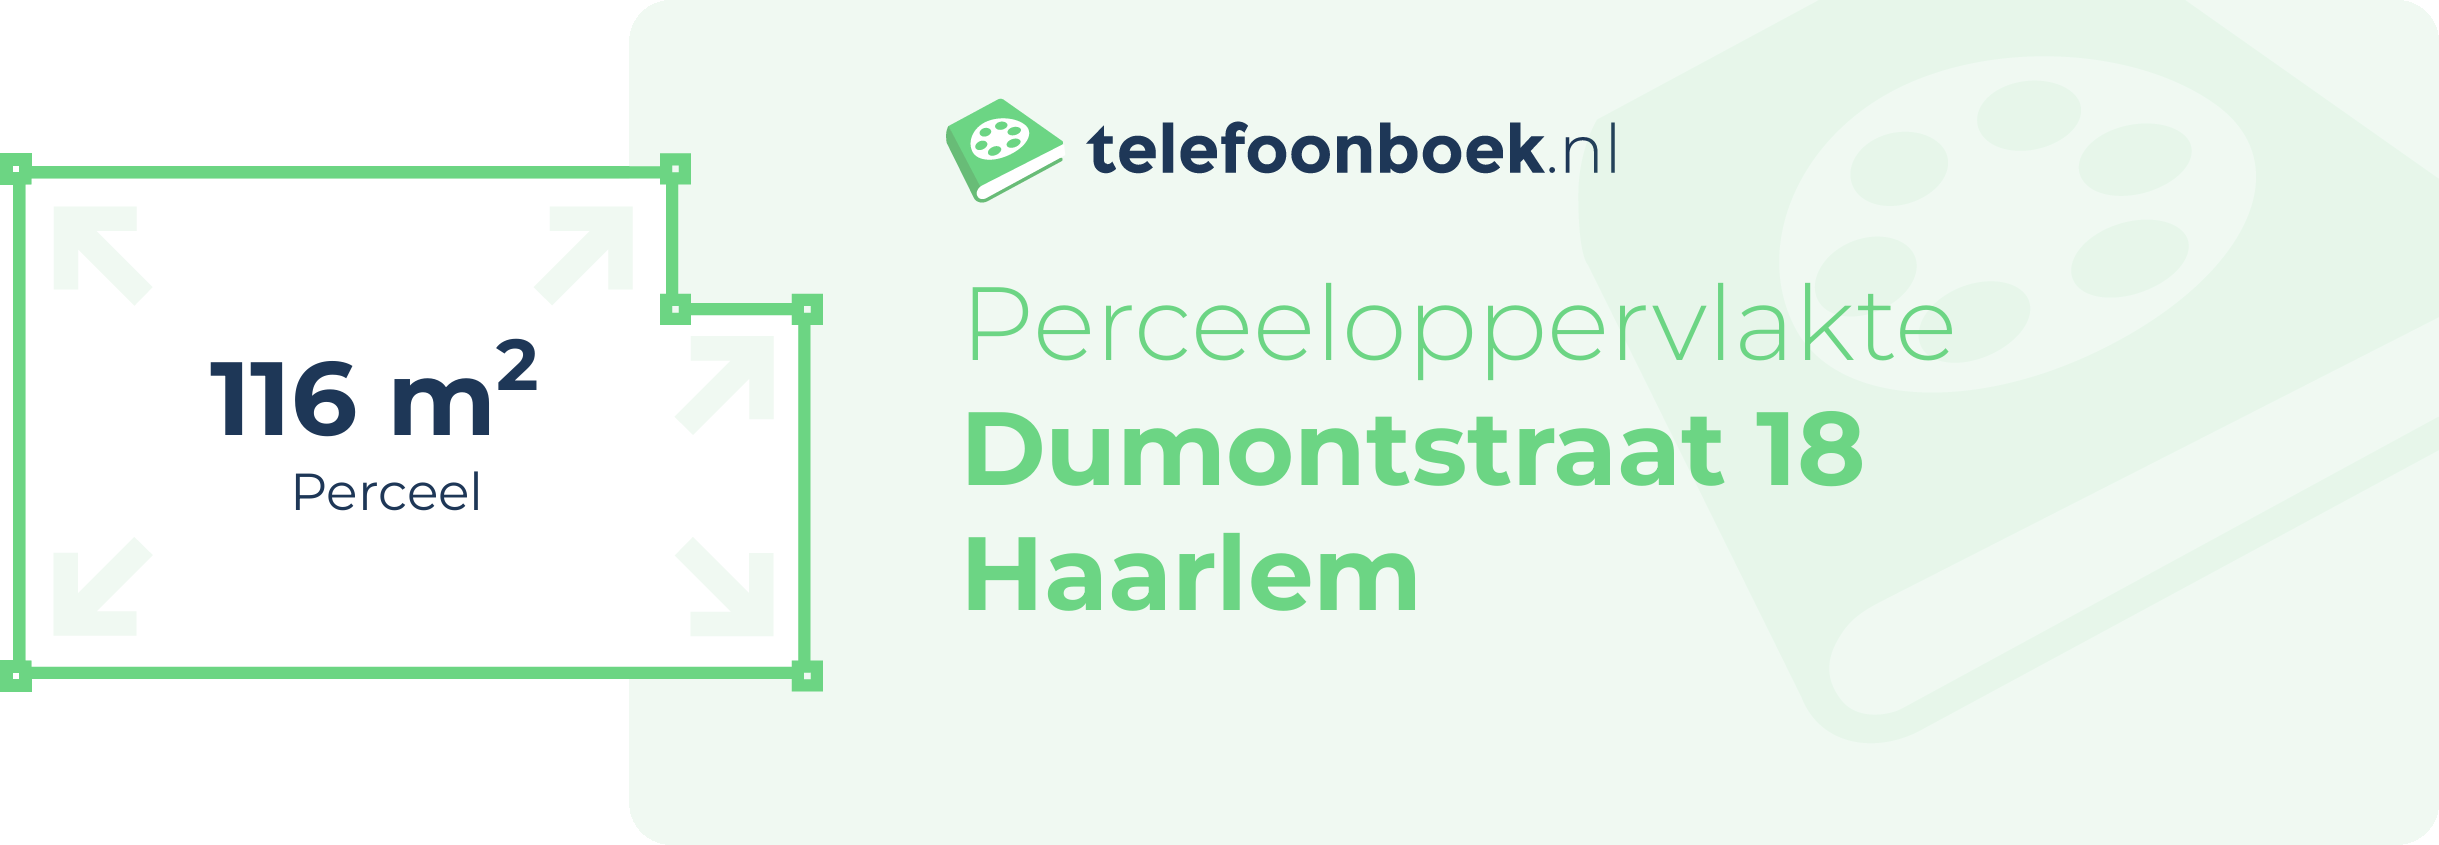 Perceeloppervlakte Dumontstraat 18 Haarlem